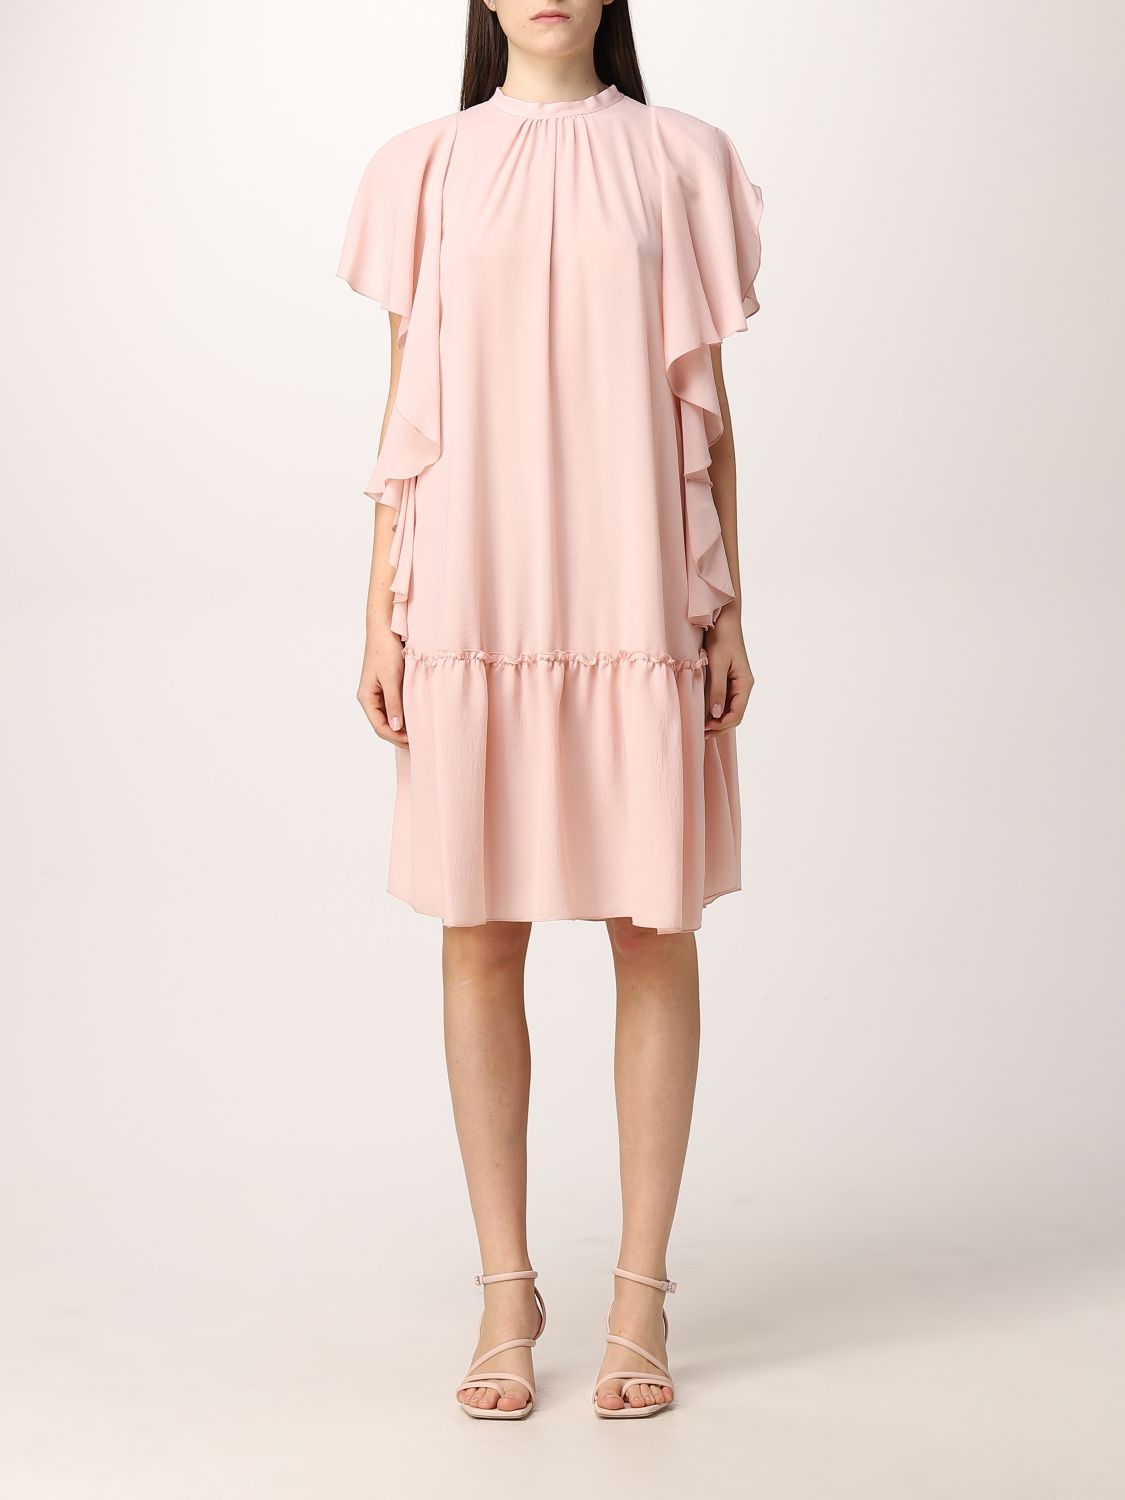 Dress Hanita: Dress women Hanita blush pink 1